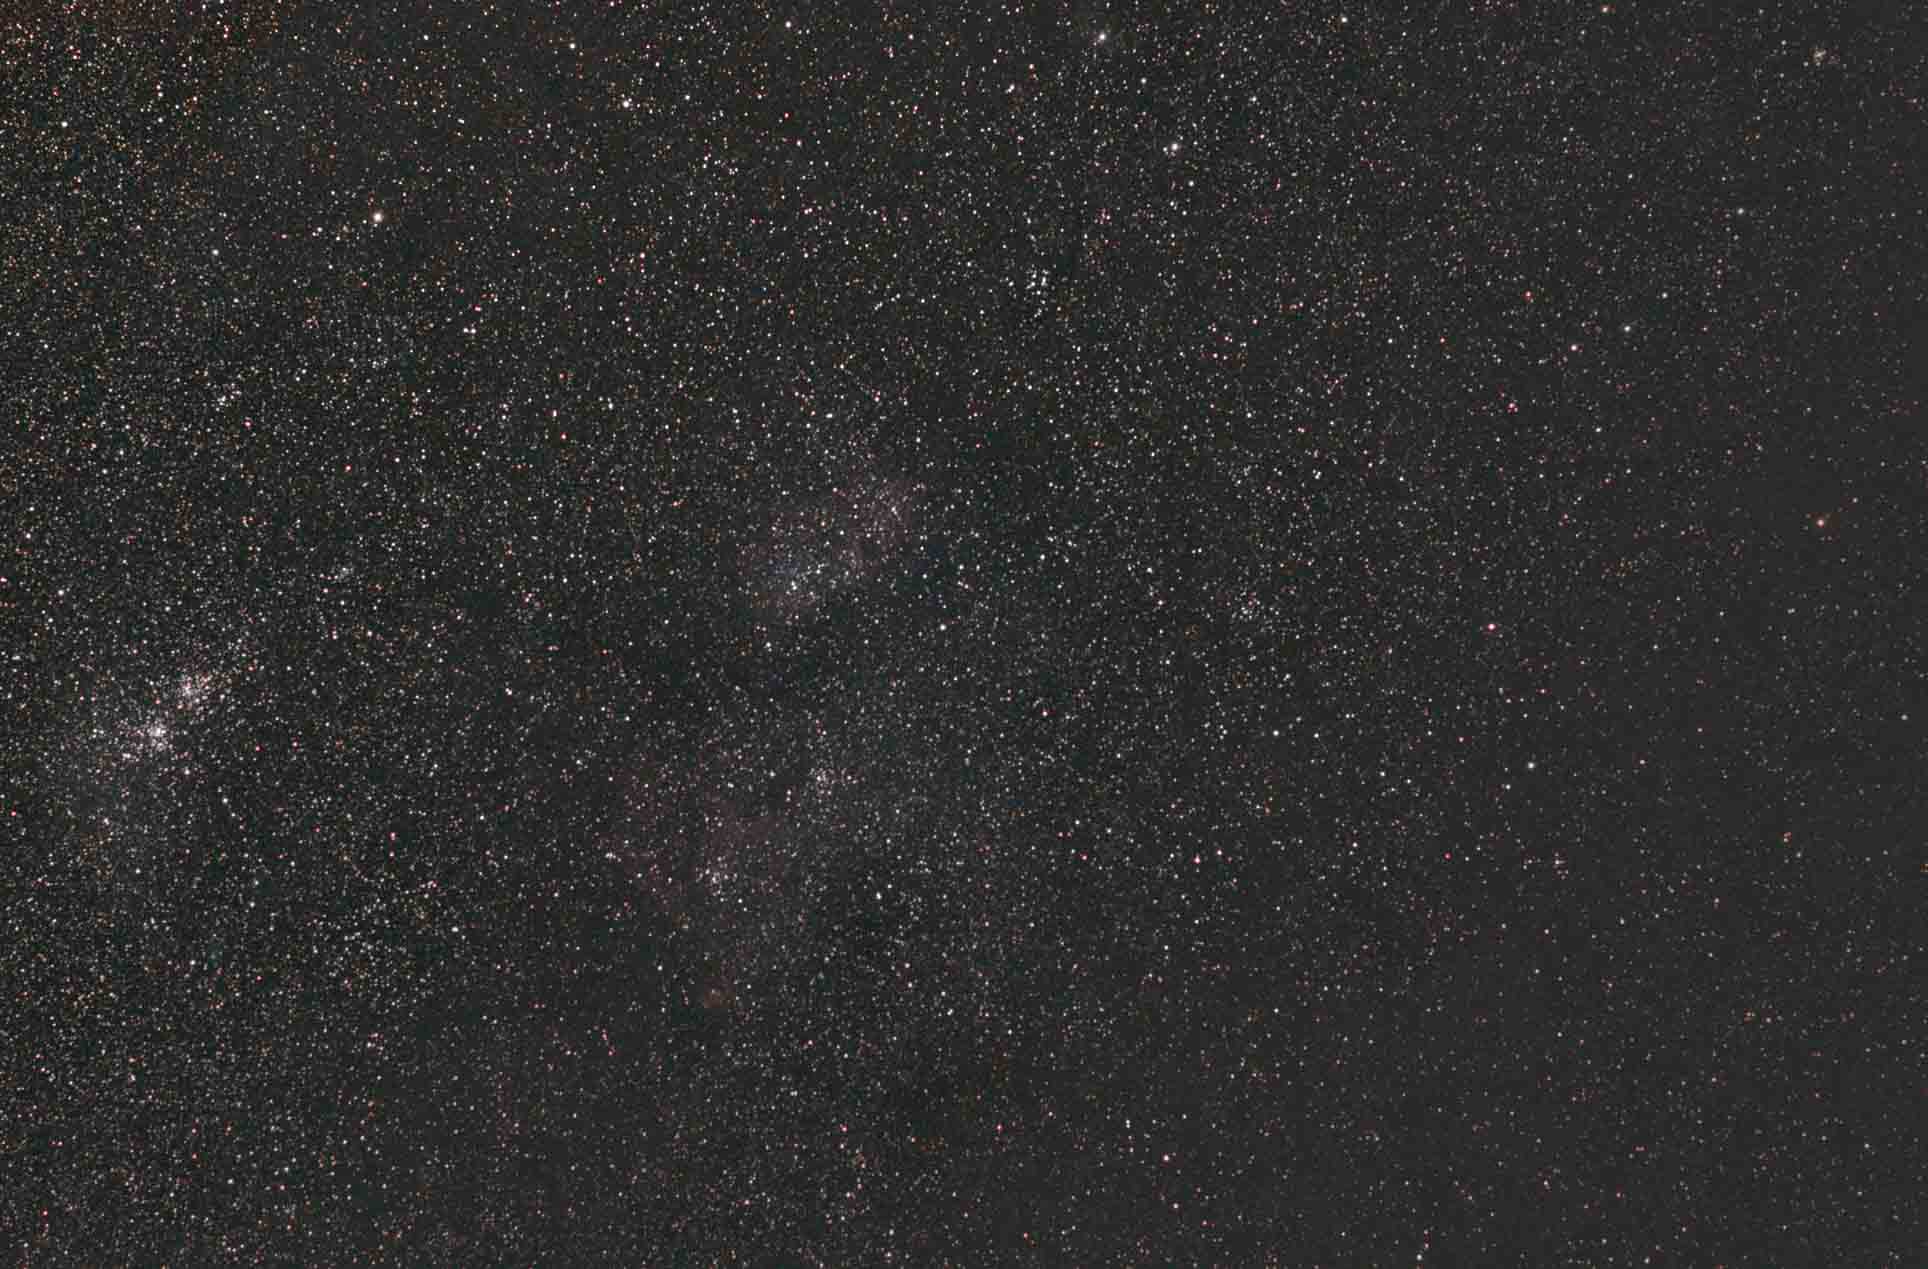 20200207-20200207 IC 1805, or Heart Nebula